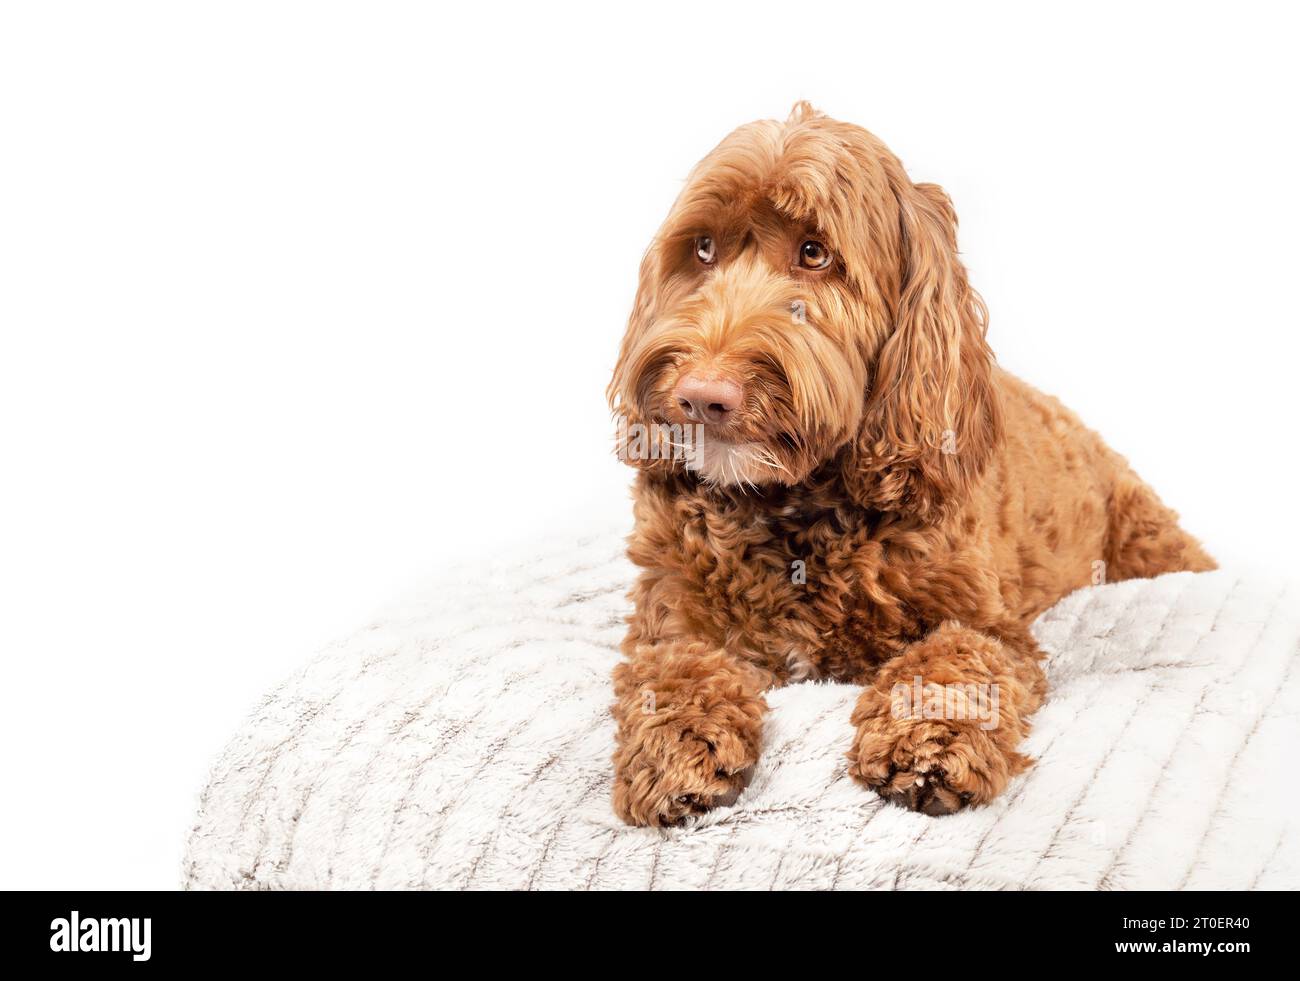 Grand chien sur oreiller regardant questionner sur le côté. Vue de face du chien mignon Labradoodle couché avec les pattes tendues et de grands yeux bruns. En attente, triste ou Banque D'Images